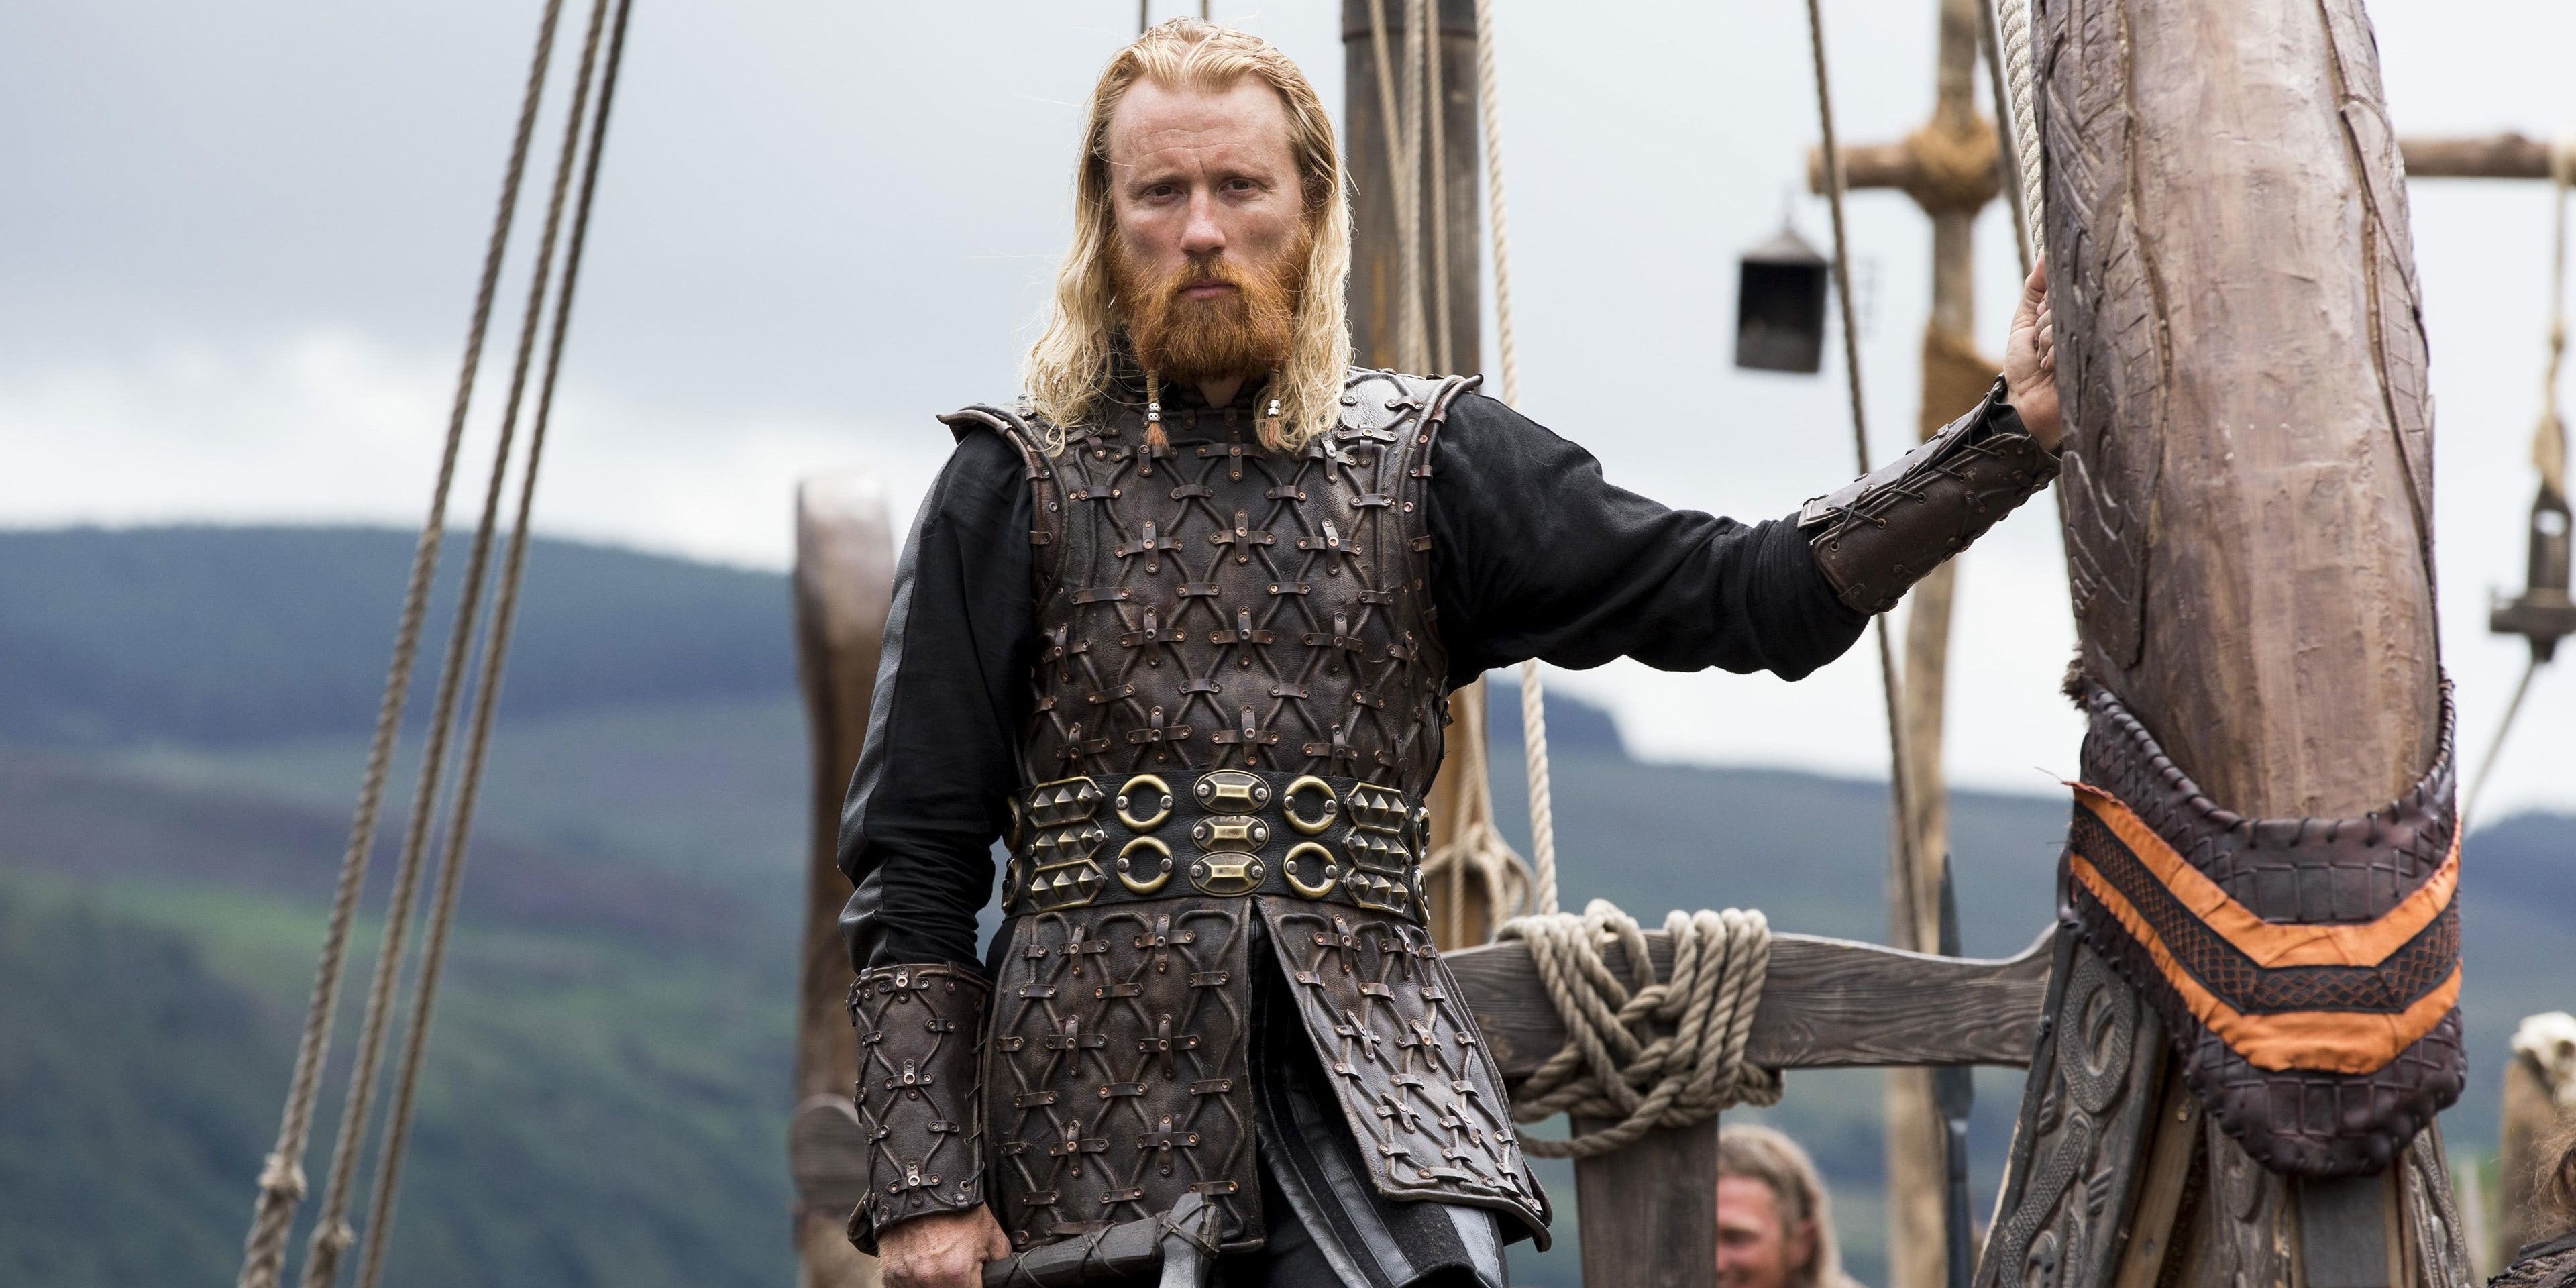 Vikings’ Most Brutal Death Was Jarl Borg